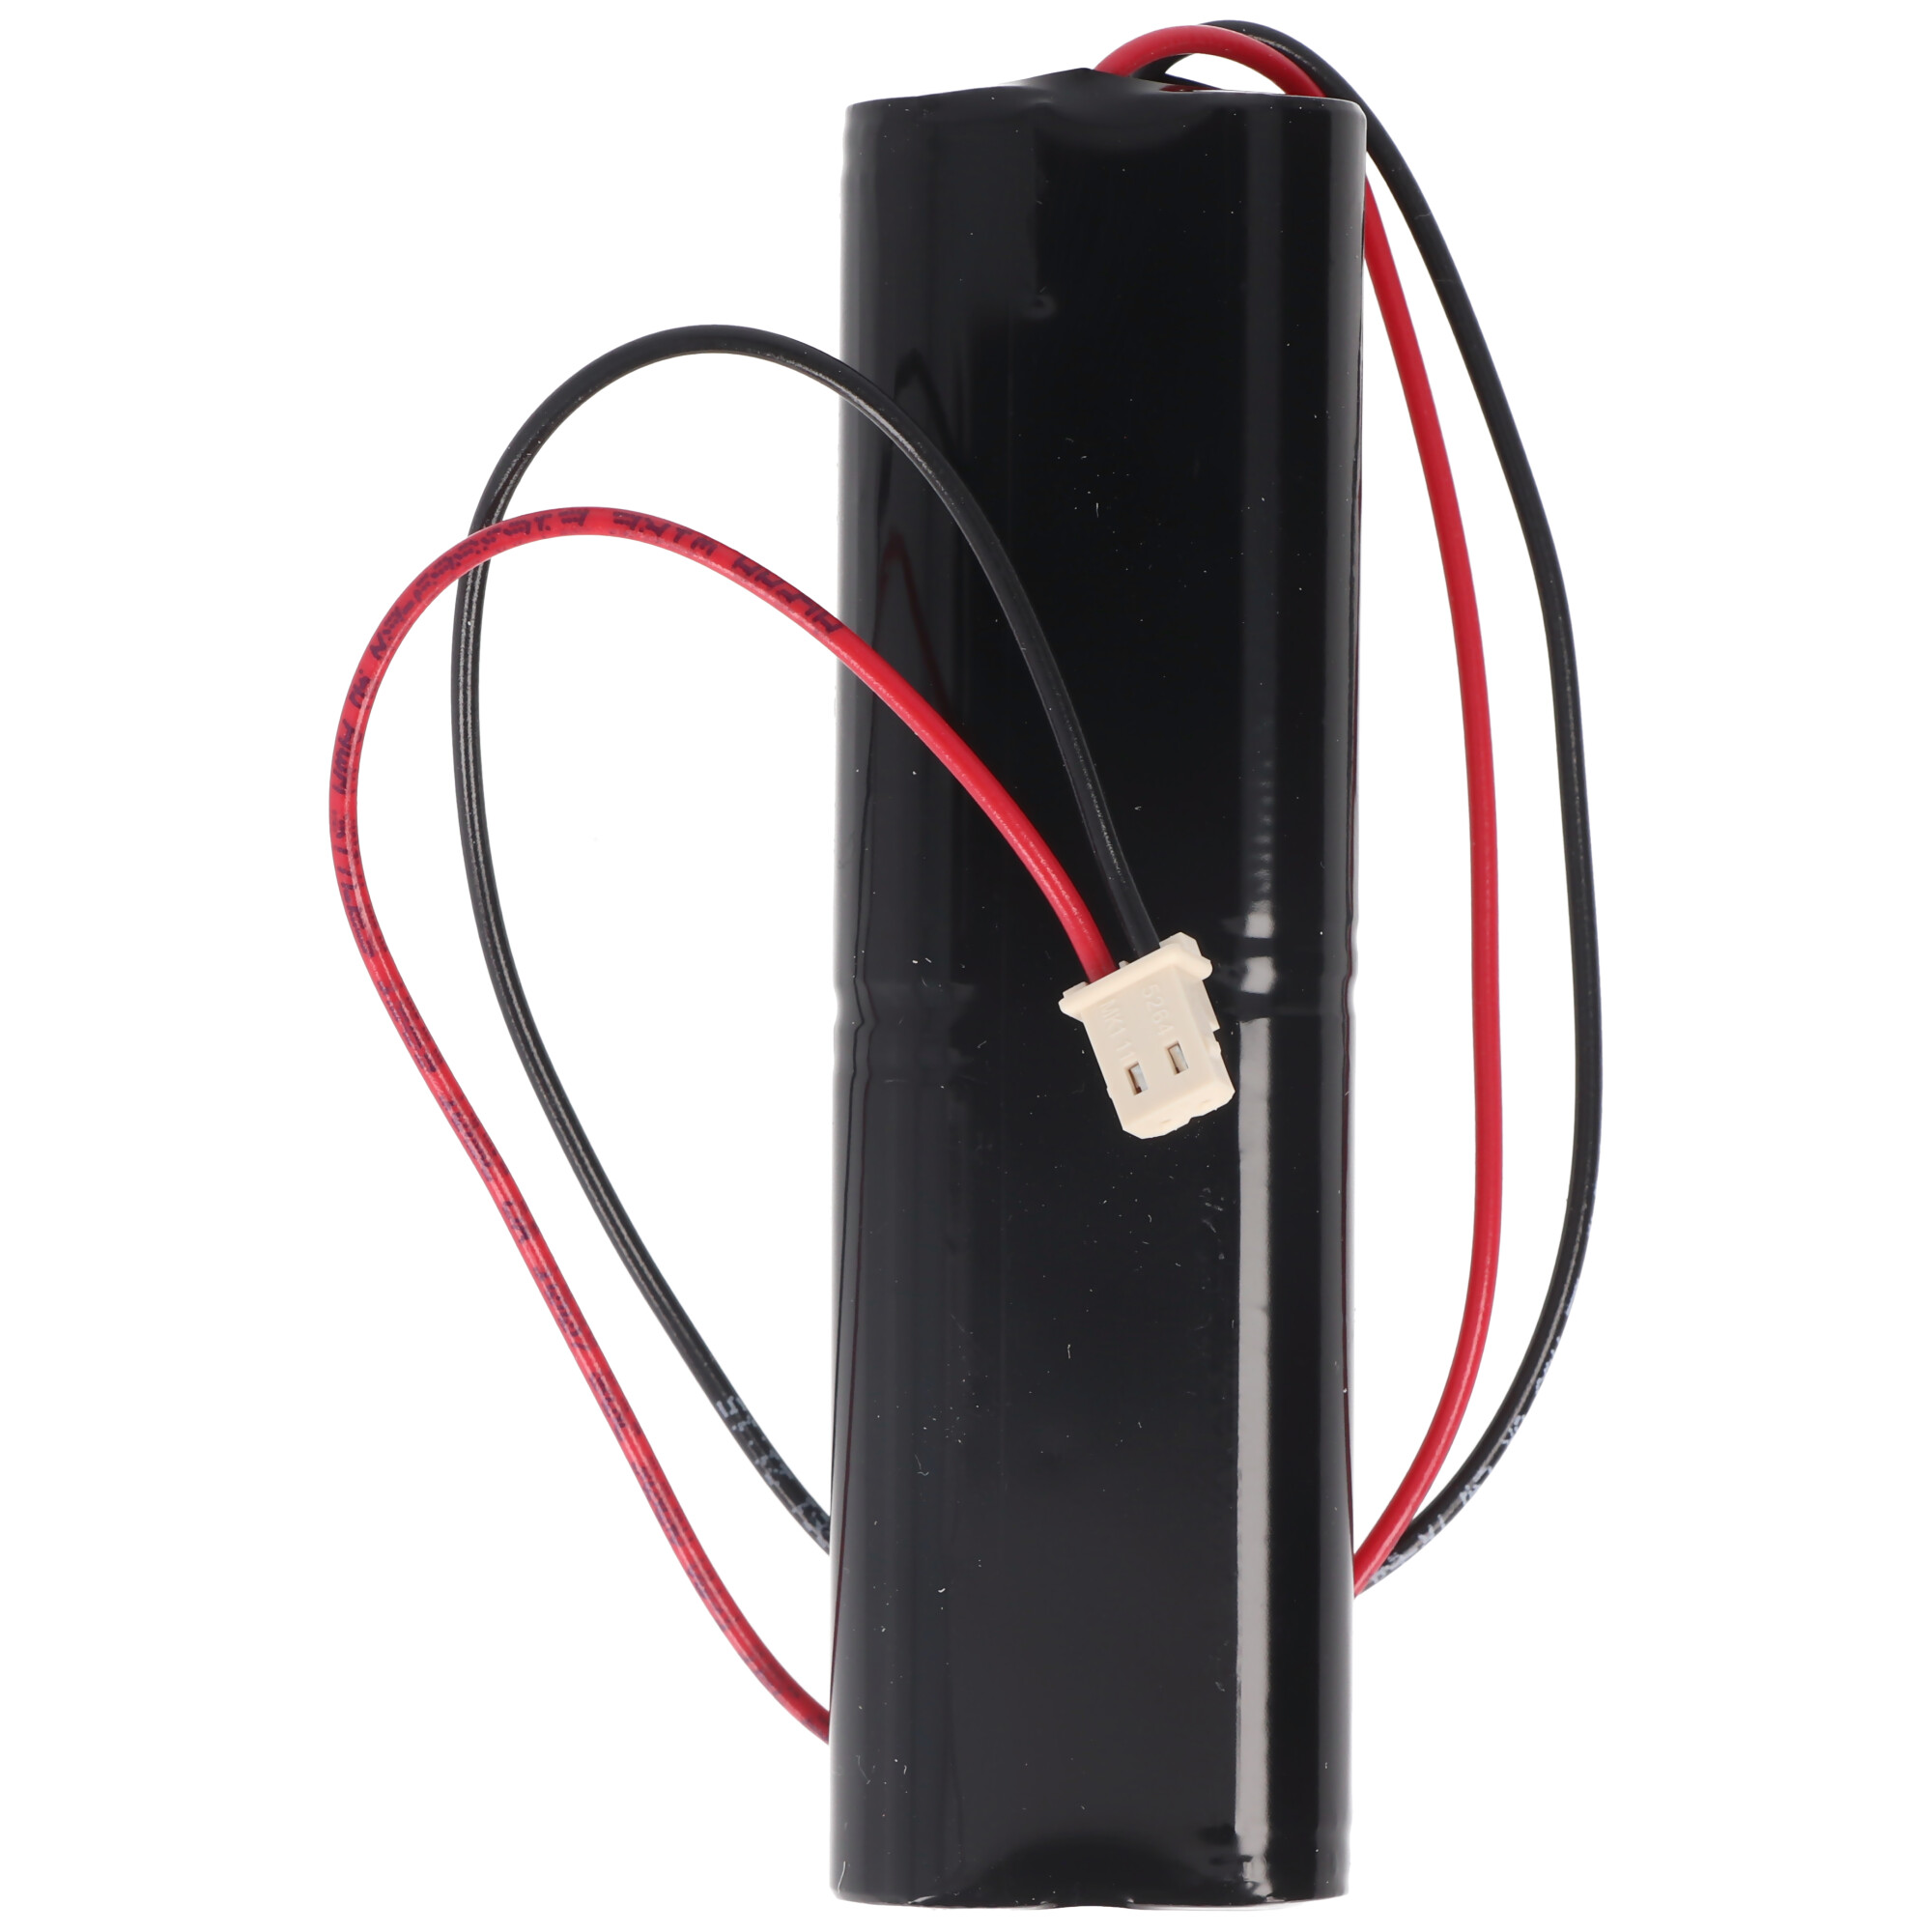 NiMH Akkupack passend für Not- und Sicherheitsbeleuchtung mit 4,8 Volt Spannung und 1600mAh Kapazität, Abmessungen 100x15x30mm, Molex 50-37-5023 Stecker